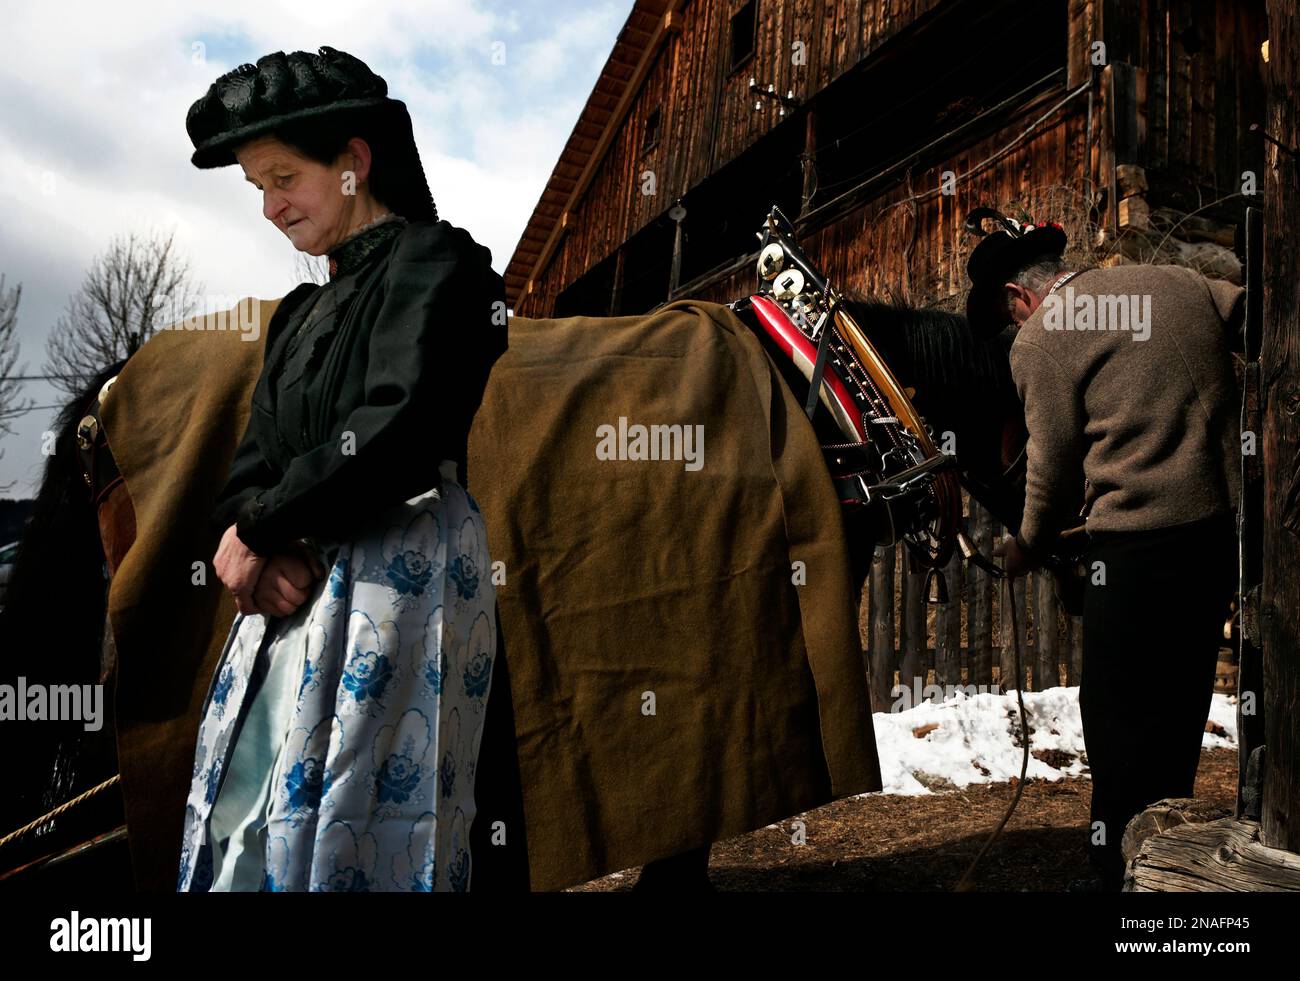 Mit schwarzem Hut wartet eine Schwester, während ihr Bruder ein Pferd vom Schlitten aushängt. Einige Ladinos wählen ein einfaches Leben in Laval, den Dolomiten, eine Zunge... Stockfoto